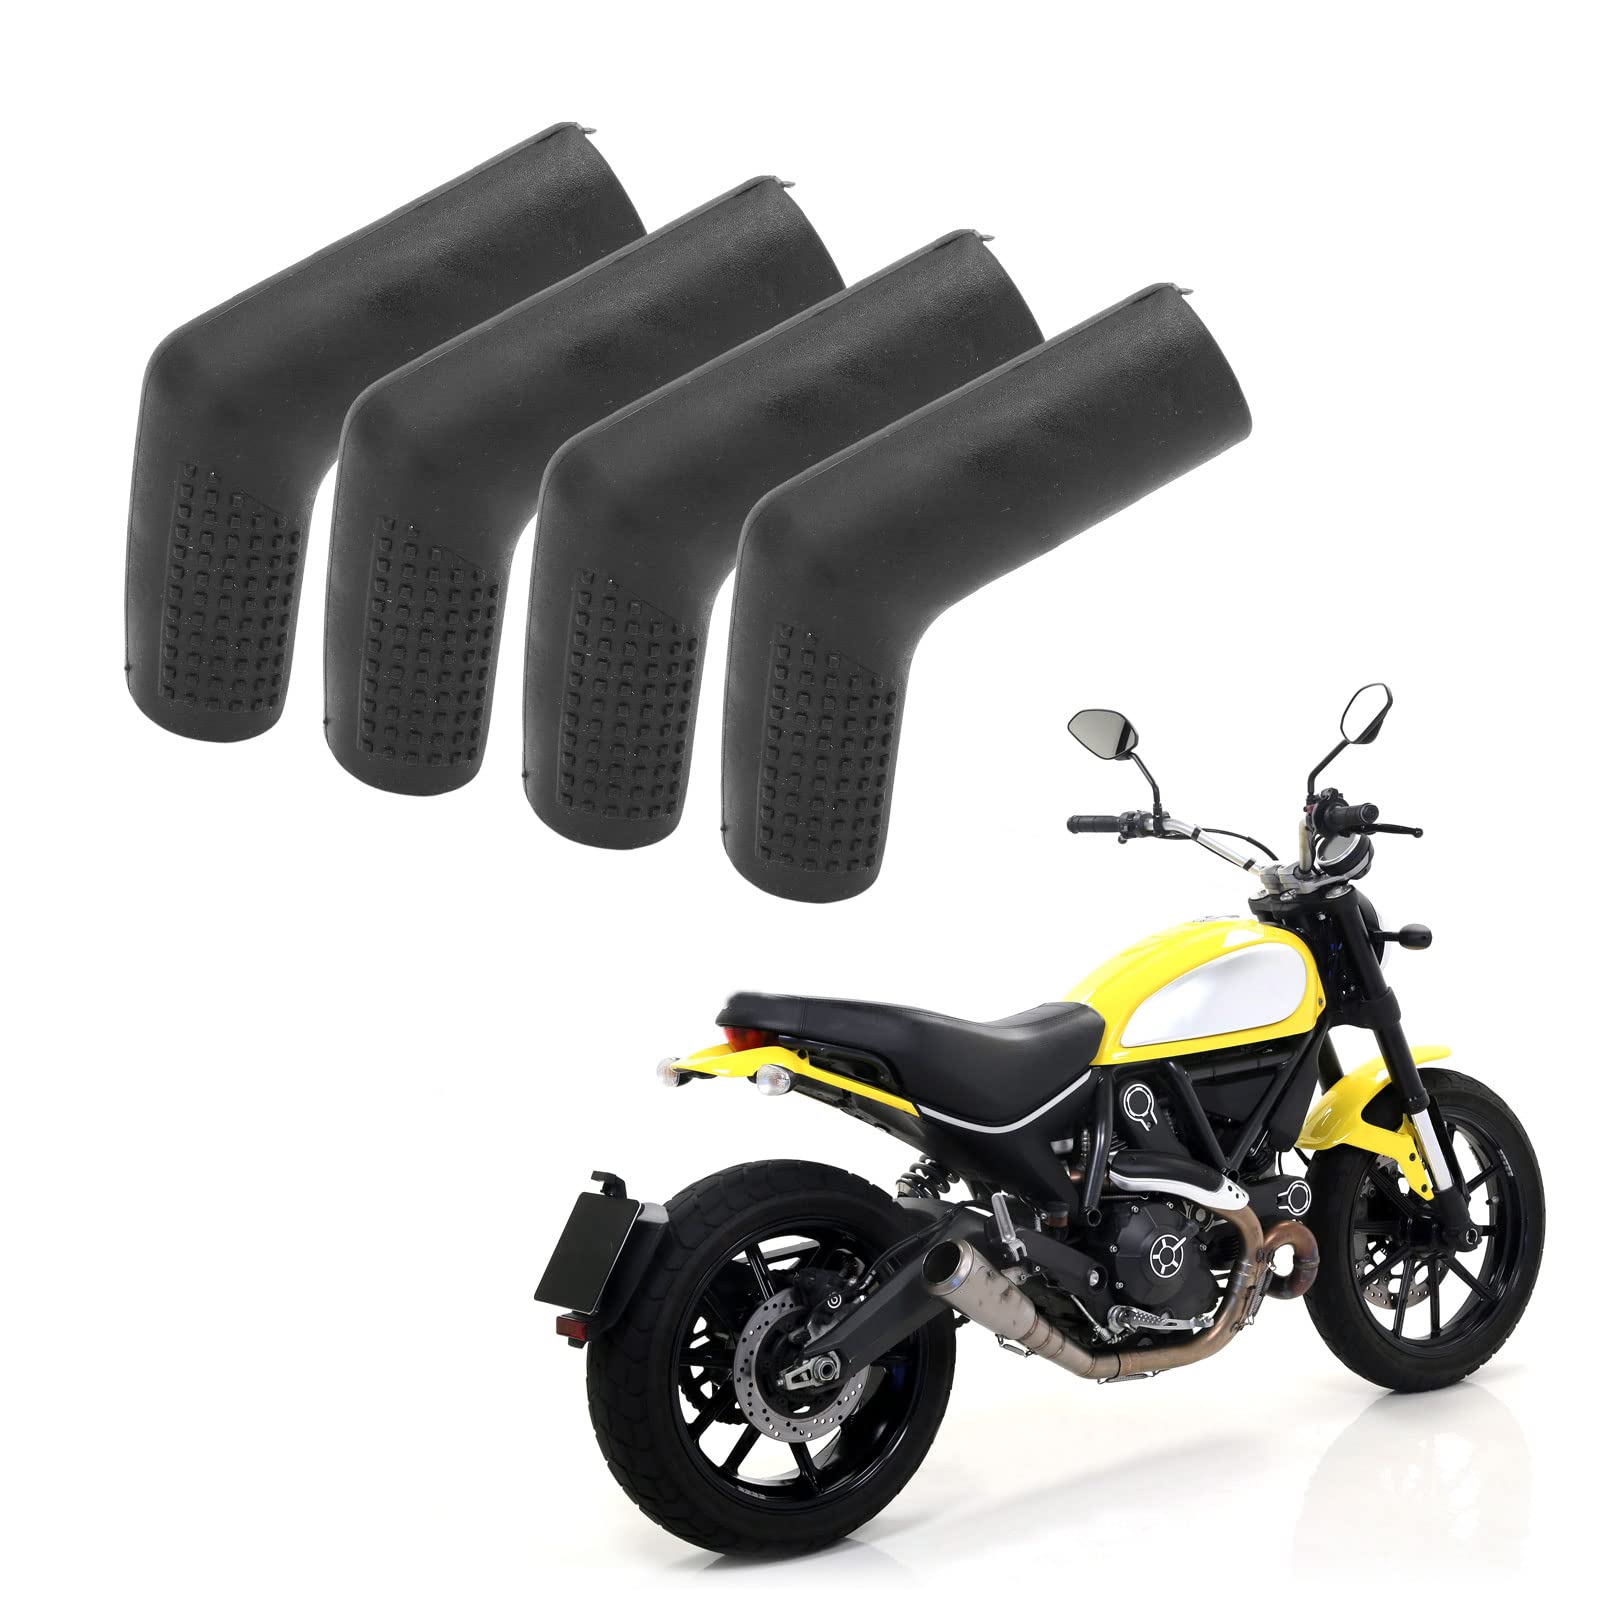 Motorrad-Schalthebel-Socke, 4 Stück Motorrad-Schalthebel-Schuhschutz, Gummi, rutschfest, universell für Street Dirt Bikes ATVs(Schwarz) von BigKing